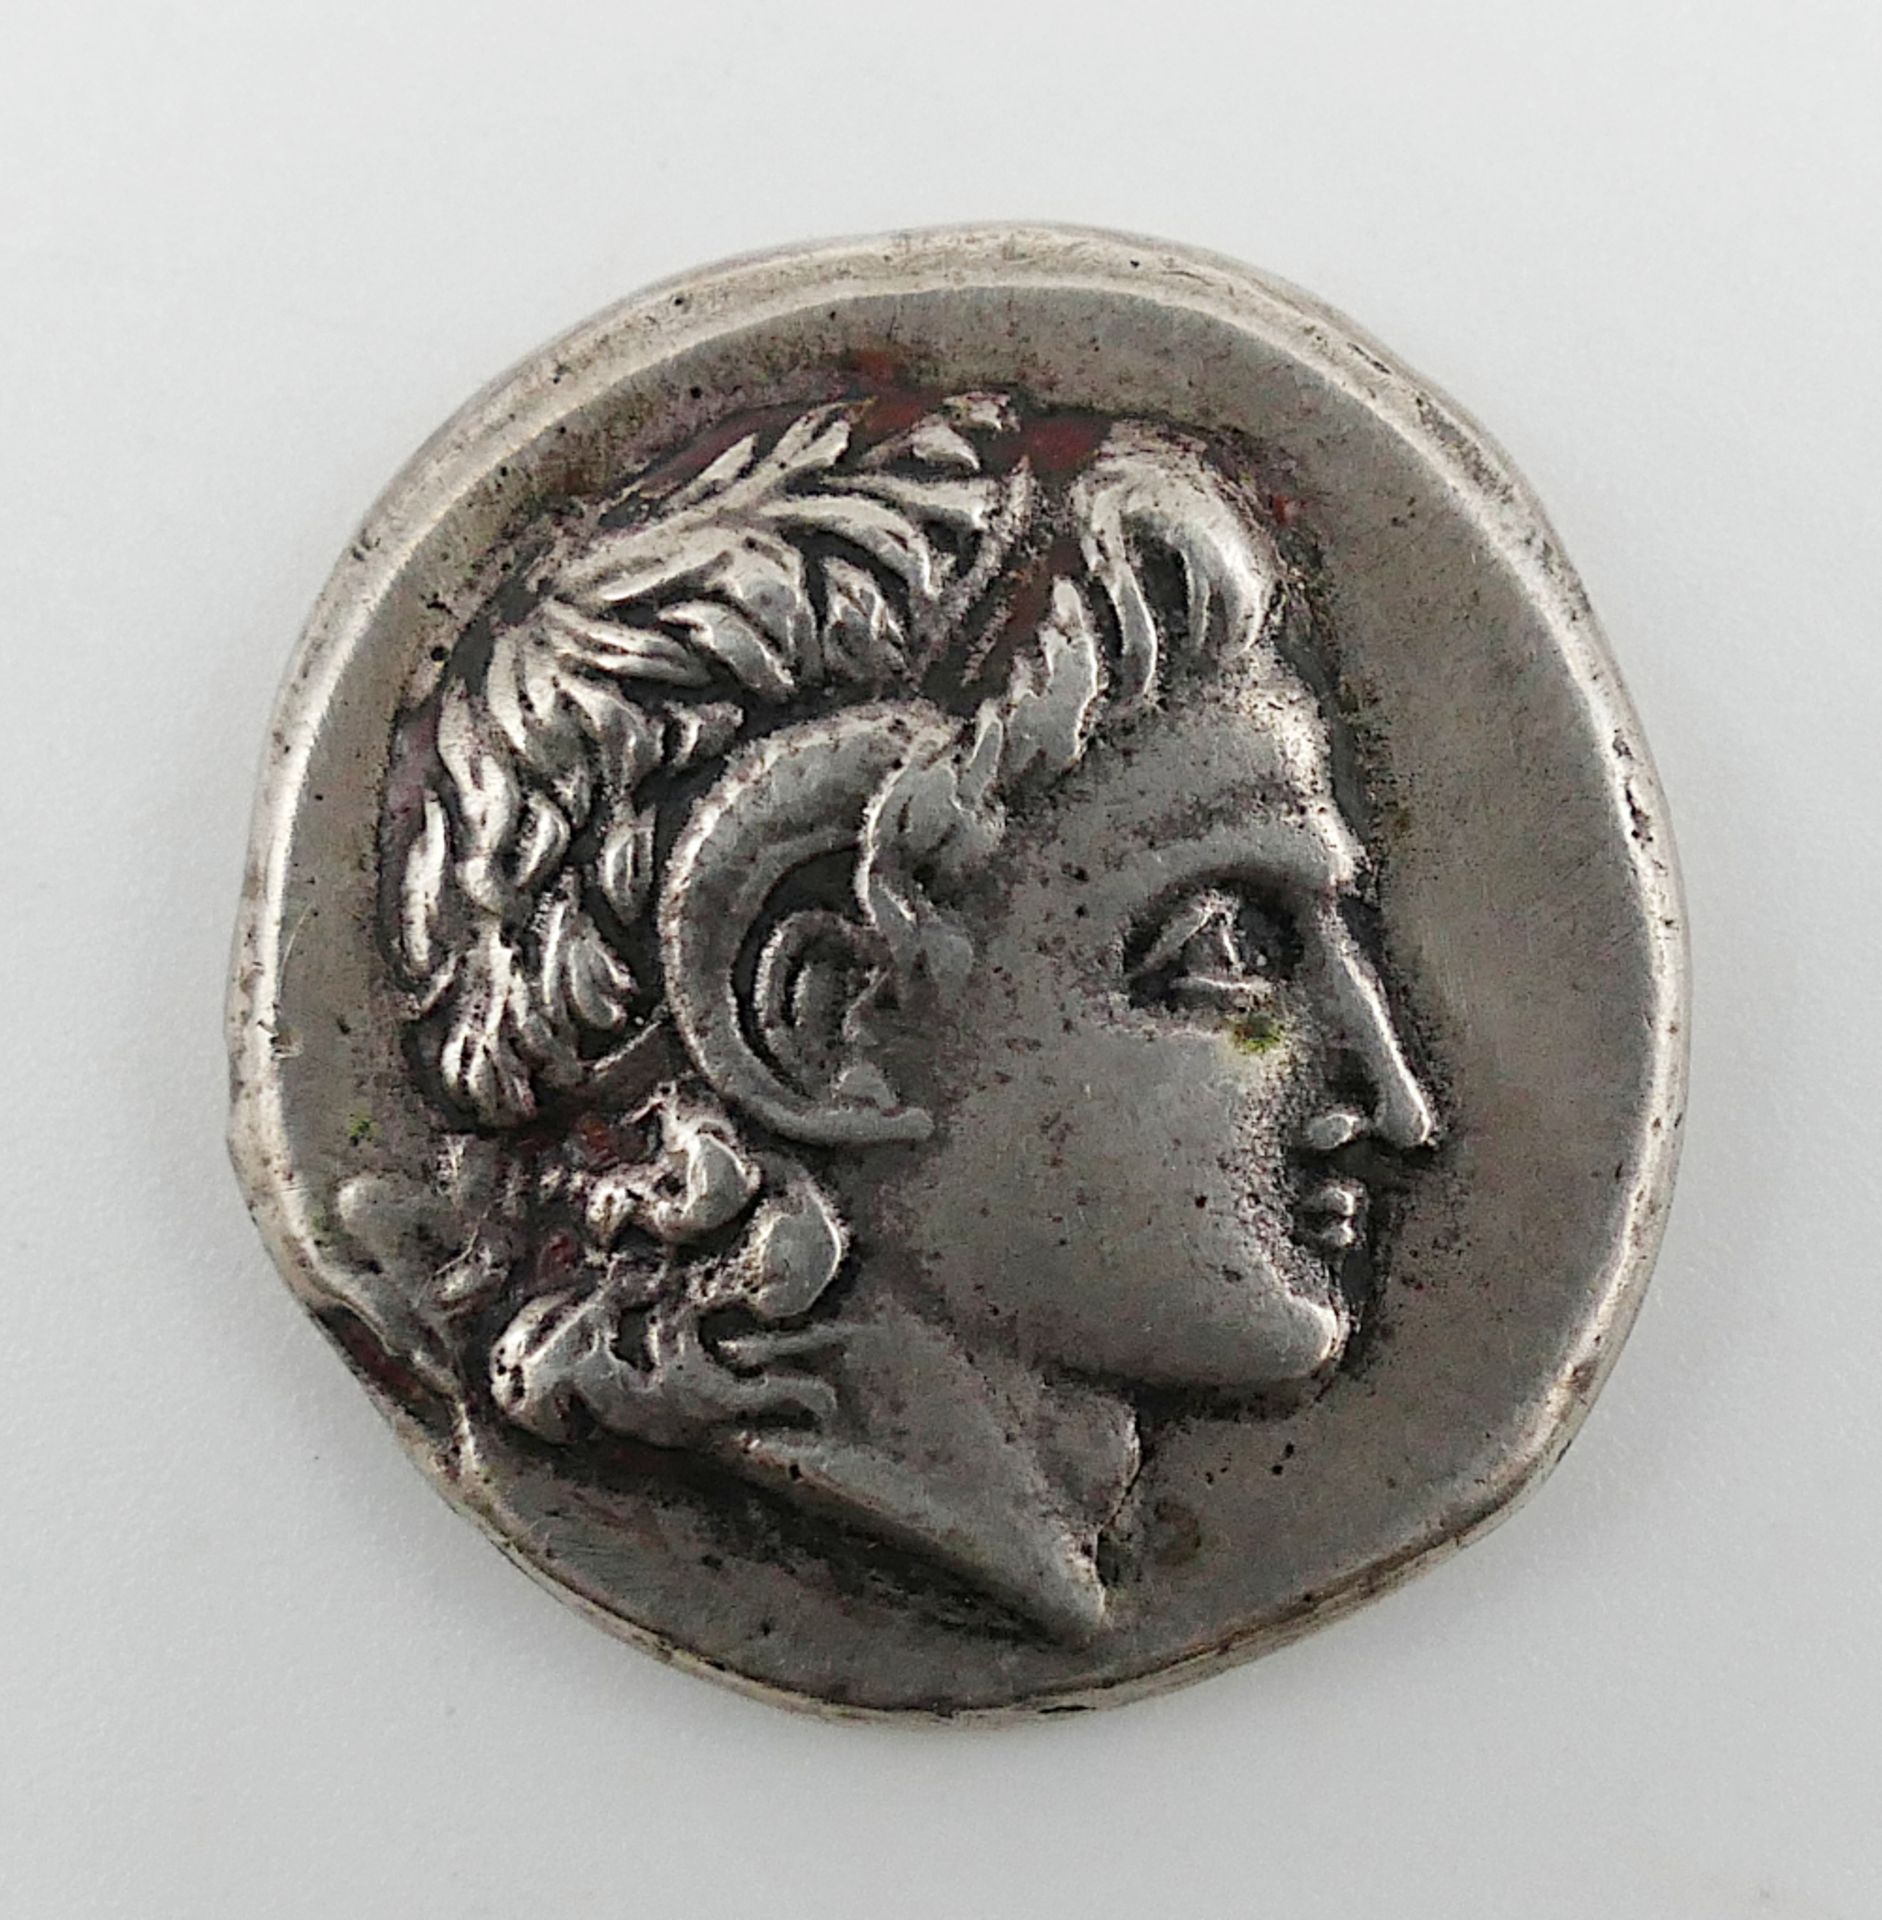 1 Münze Metall, wohl römisch, wohl antik, mit 2 Belegen von Graf Klenau von 1976: jedoch unklar ob z - Image 2 of 3